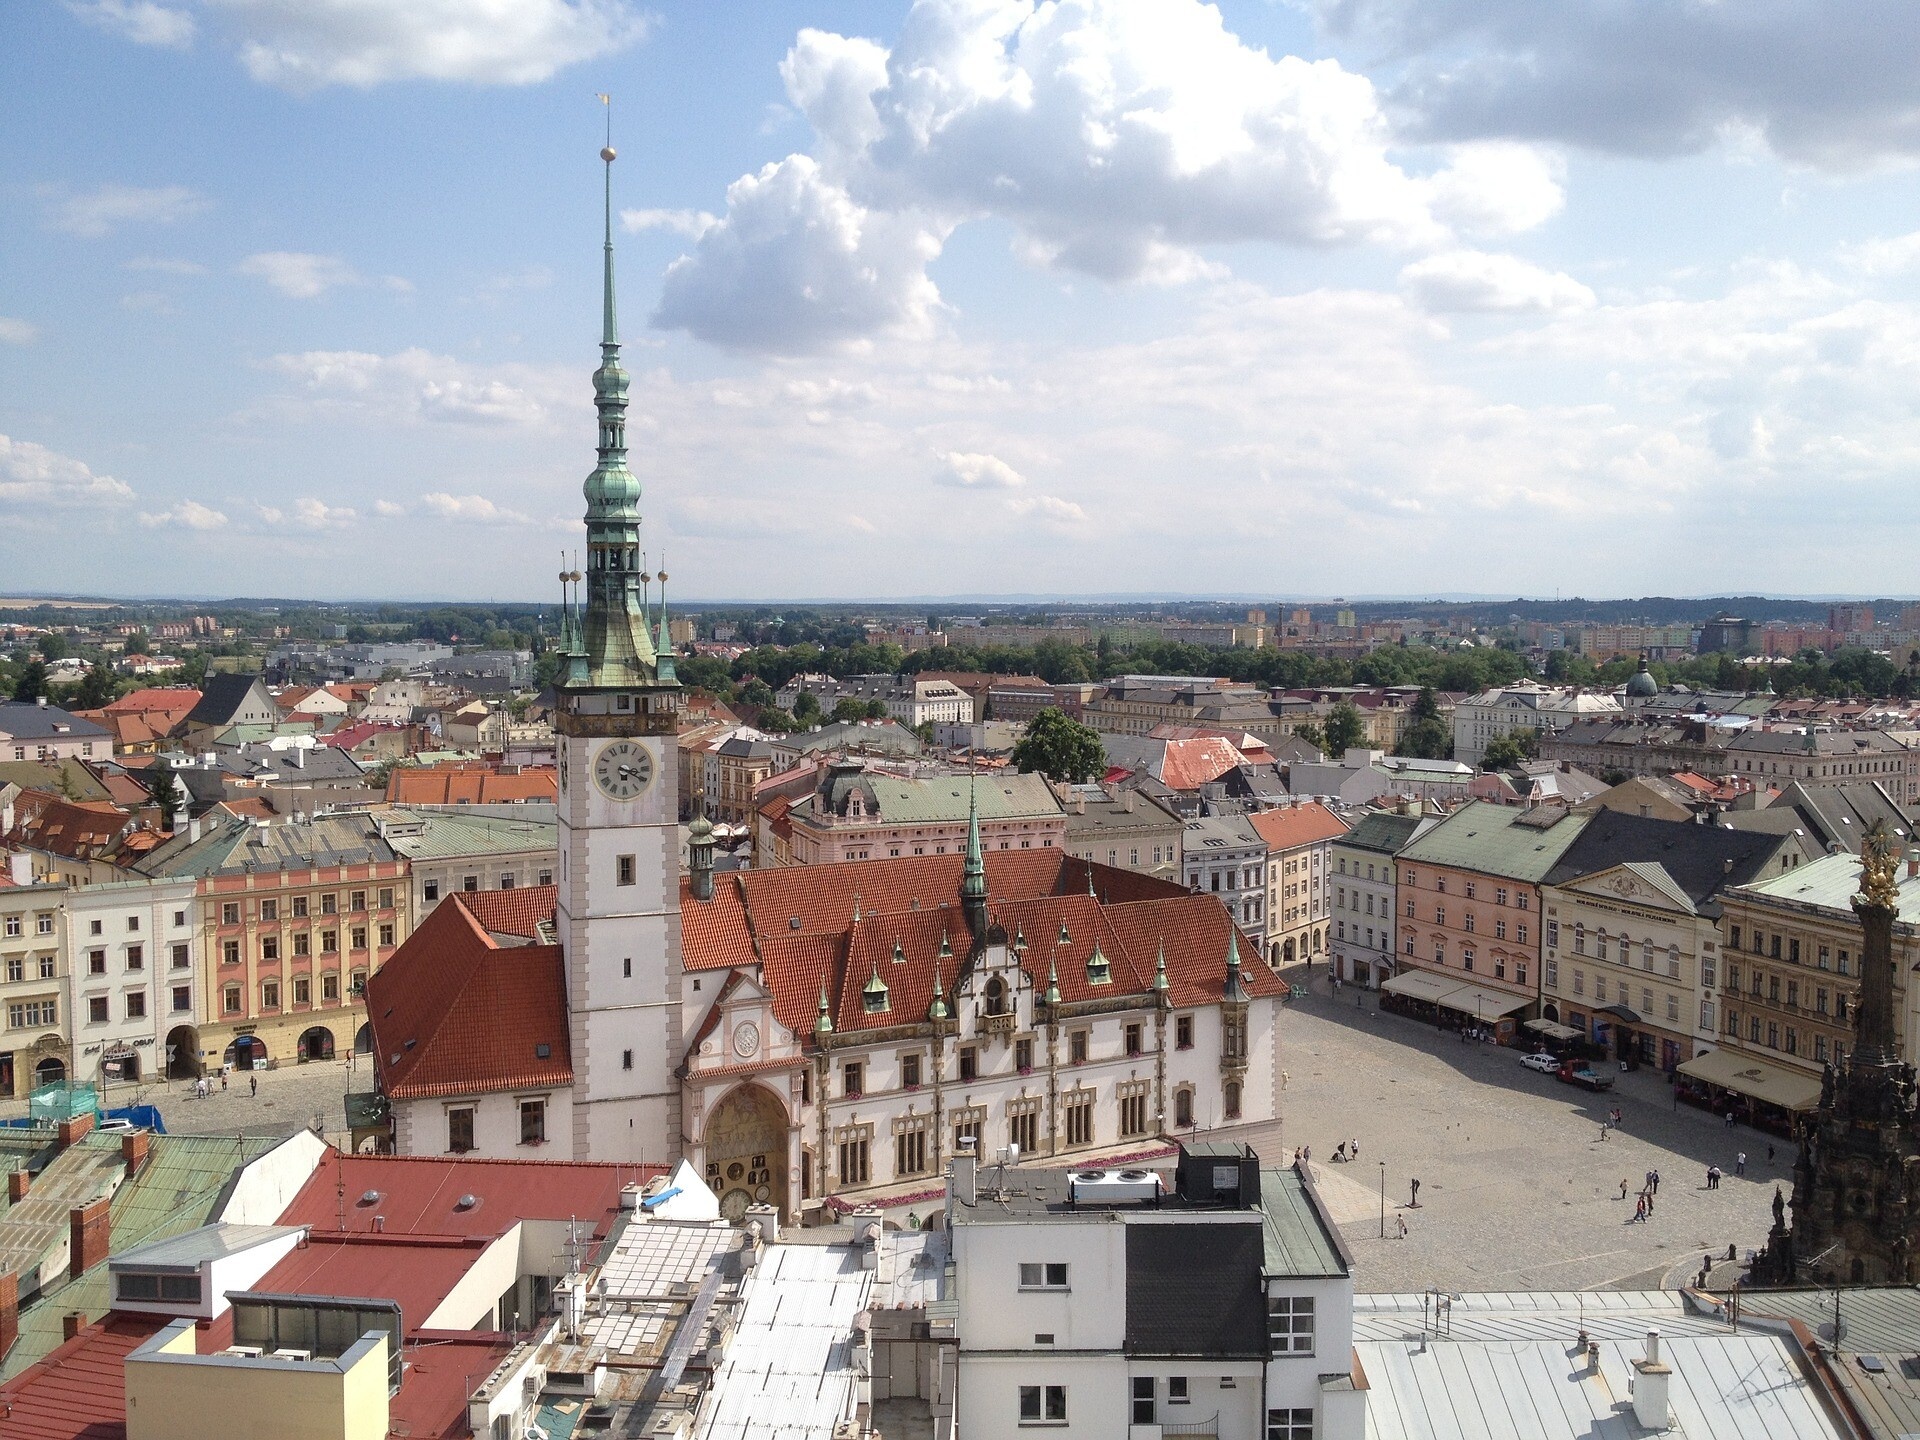 Czechia (Czech Republic): Olomouc, Located on the Morava River, Town square. 1920x1440 HD Wallpaper.